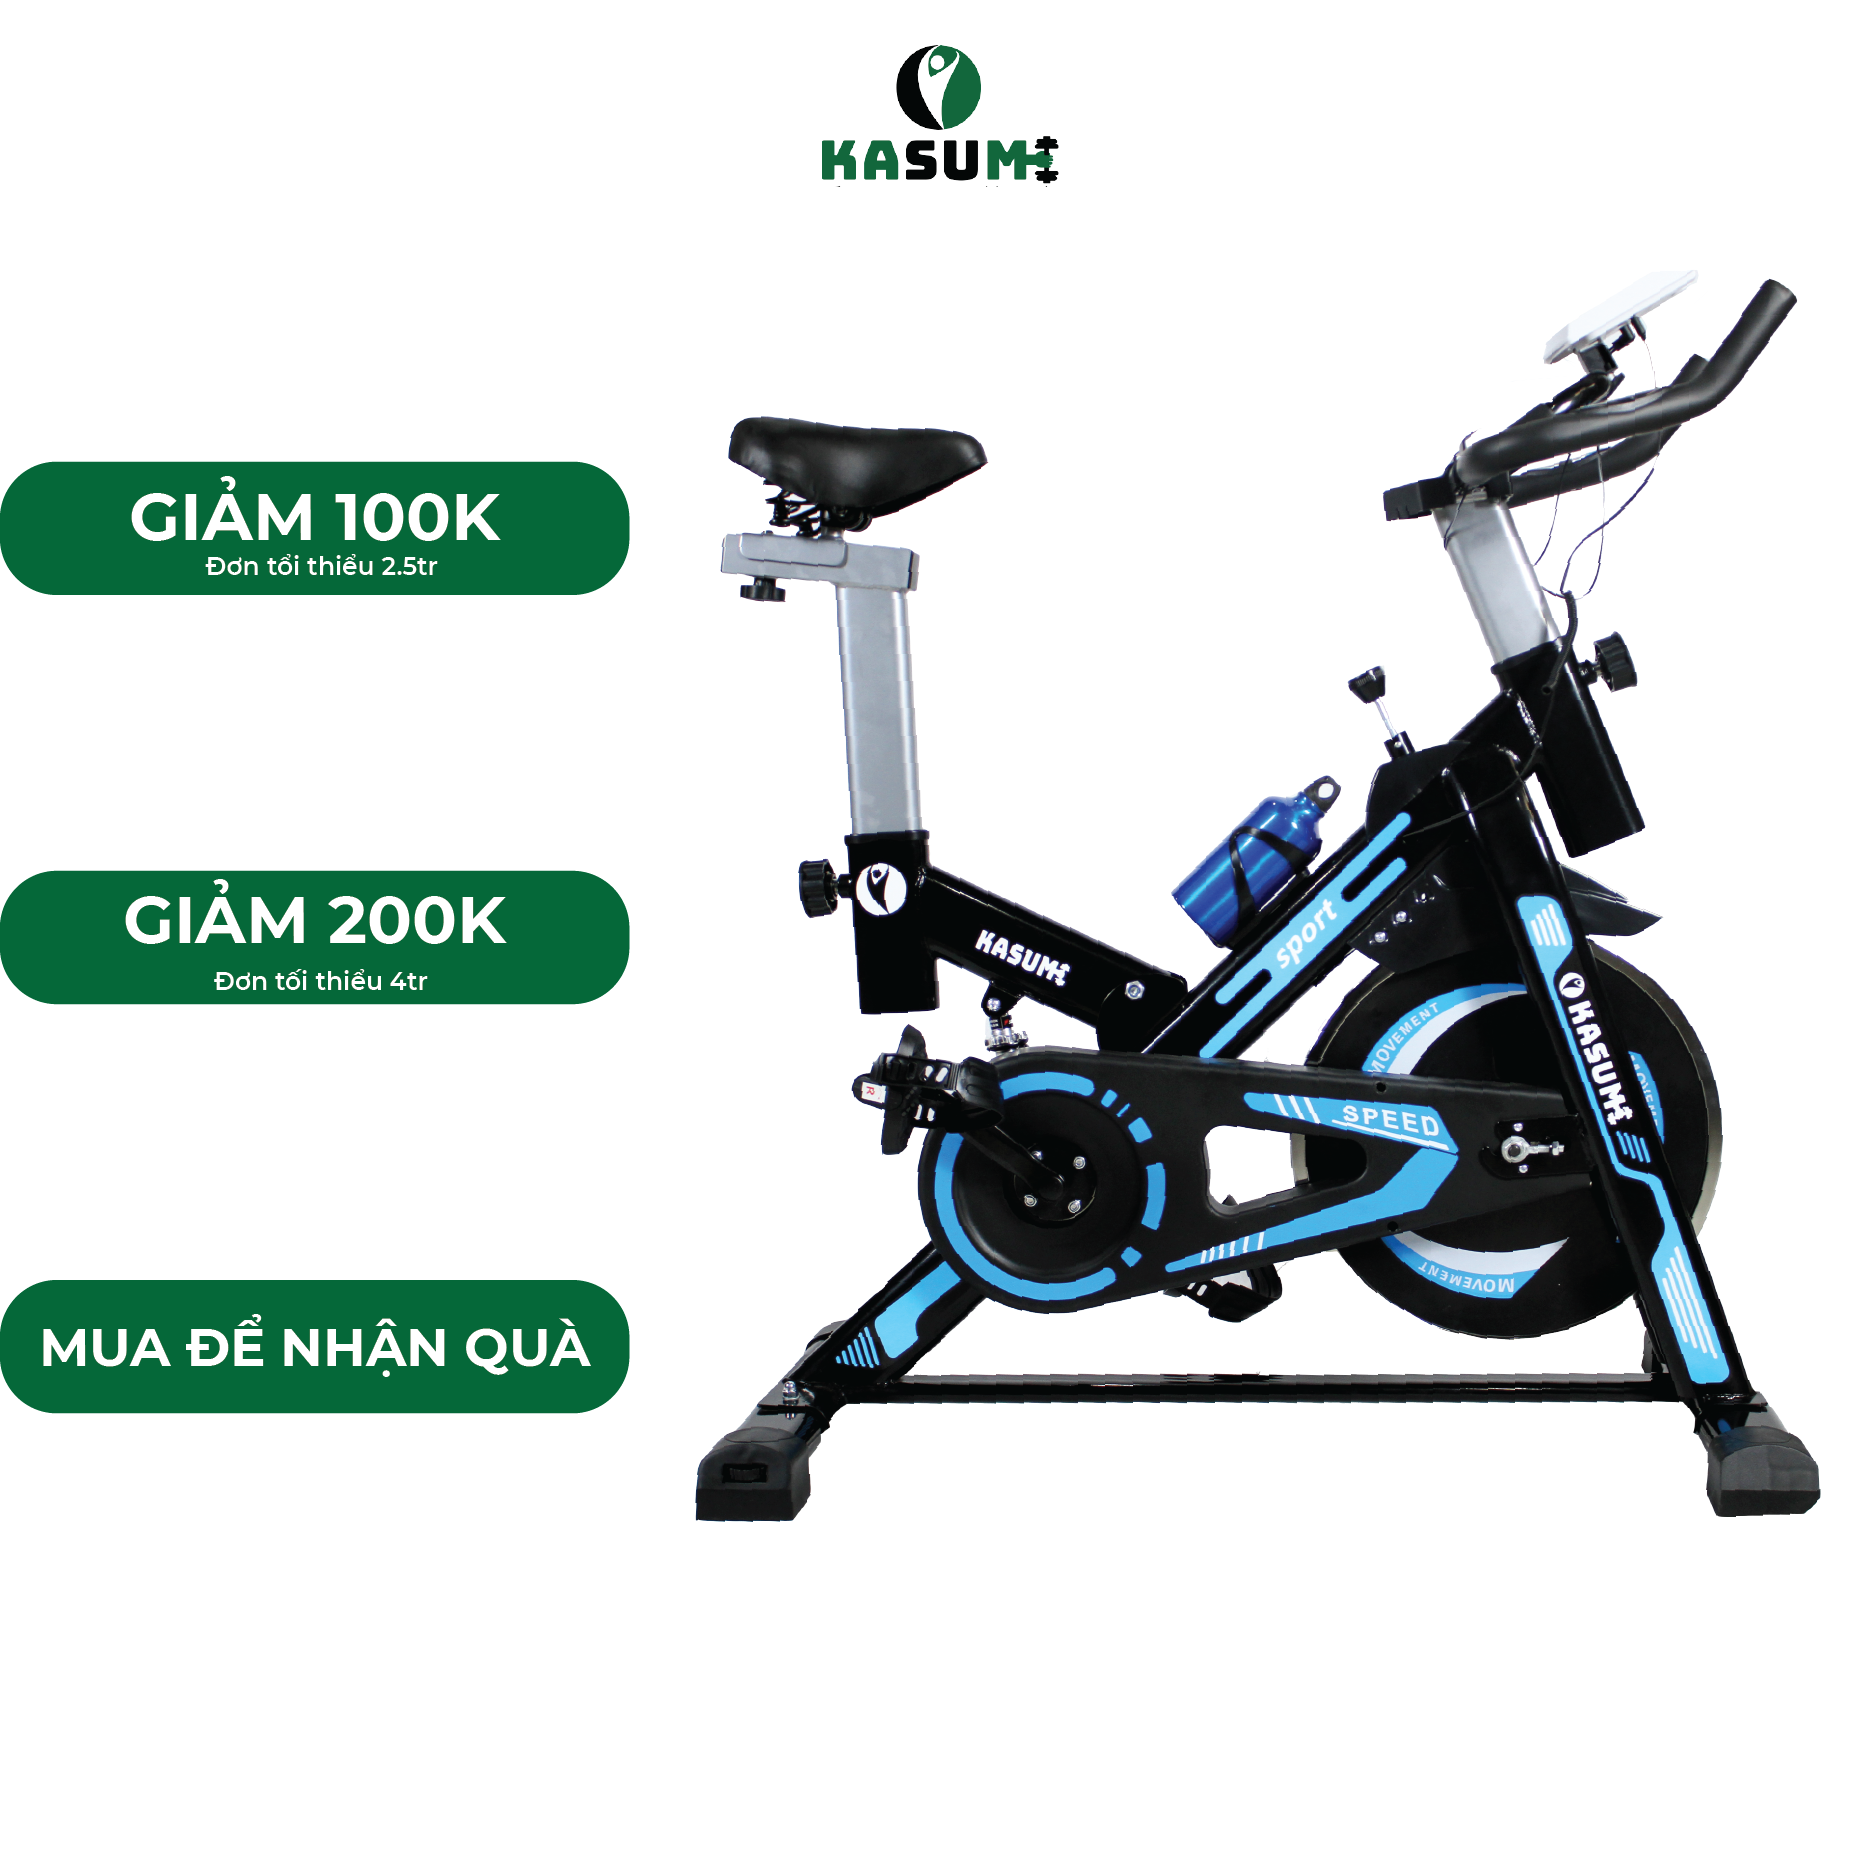 Xe đạp tập thể dục KASUMI HL005 có lò xo giảm chấn hỗ trợ tập luyện hiệu quả